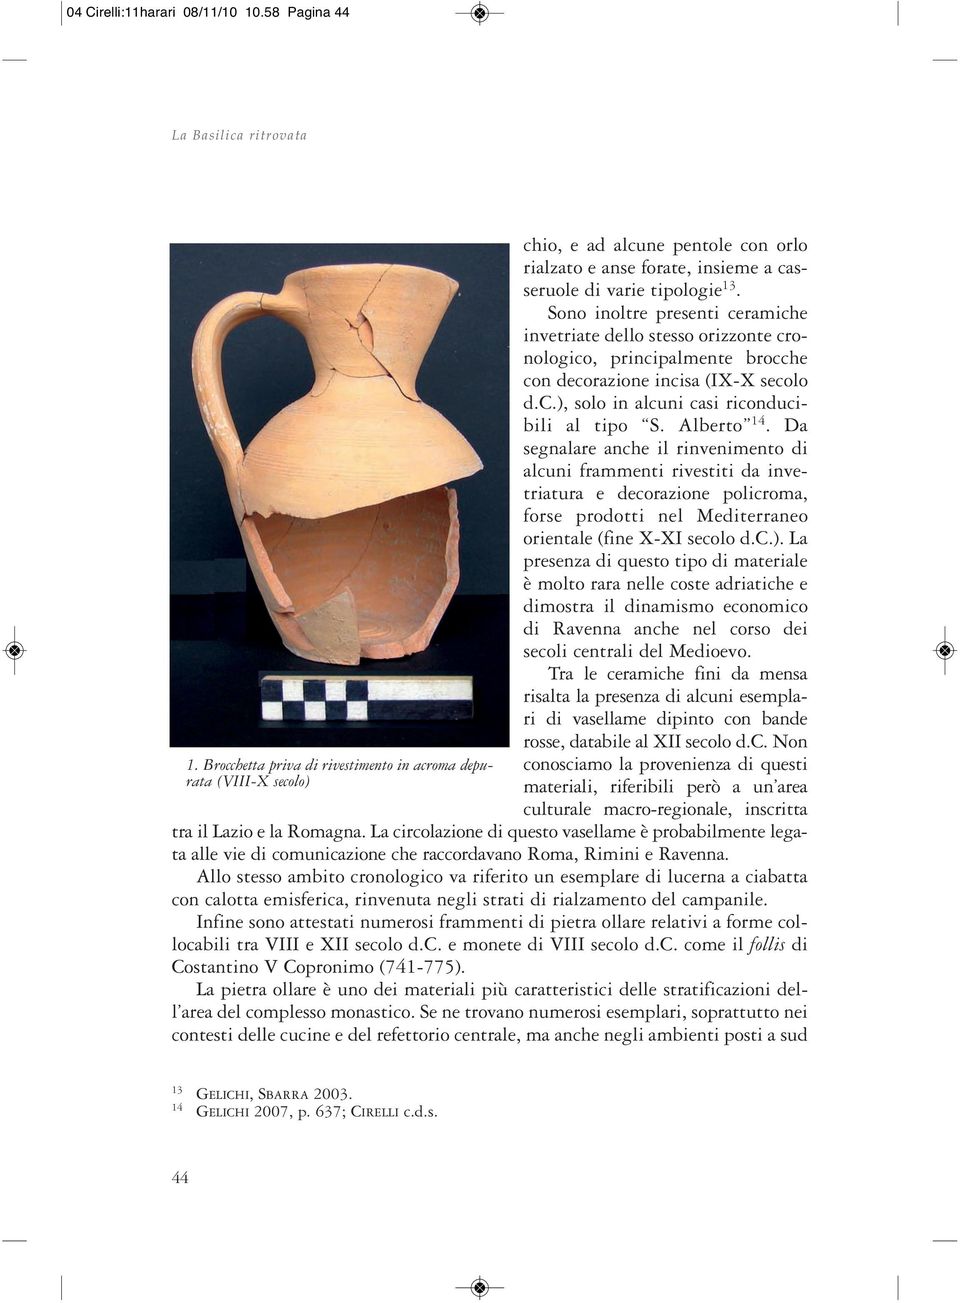 Sono inoltre presenti ceramiche invetriate dello stesso orizzonte cronologico, principalmente brocche con decorazione incisa (IX-X secolo d.c.), solo in alcuni casi riconducibili al tipo S.